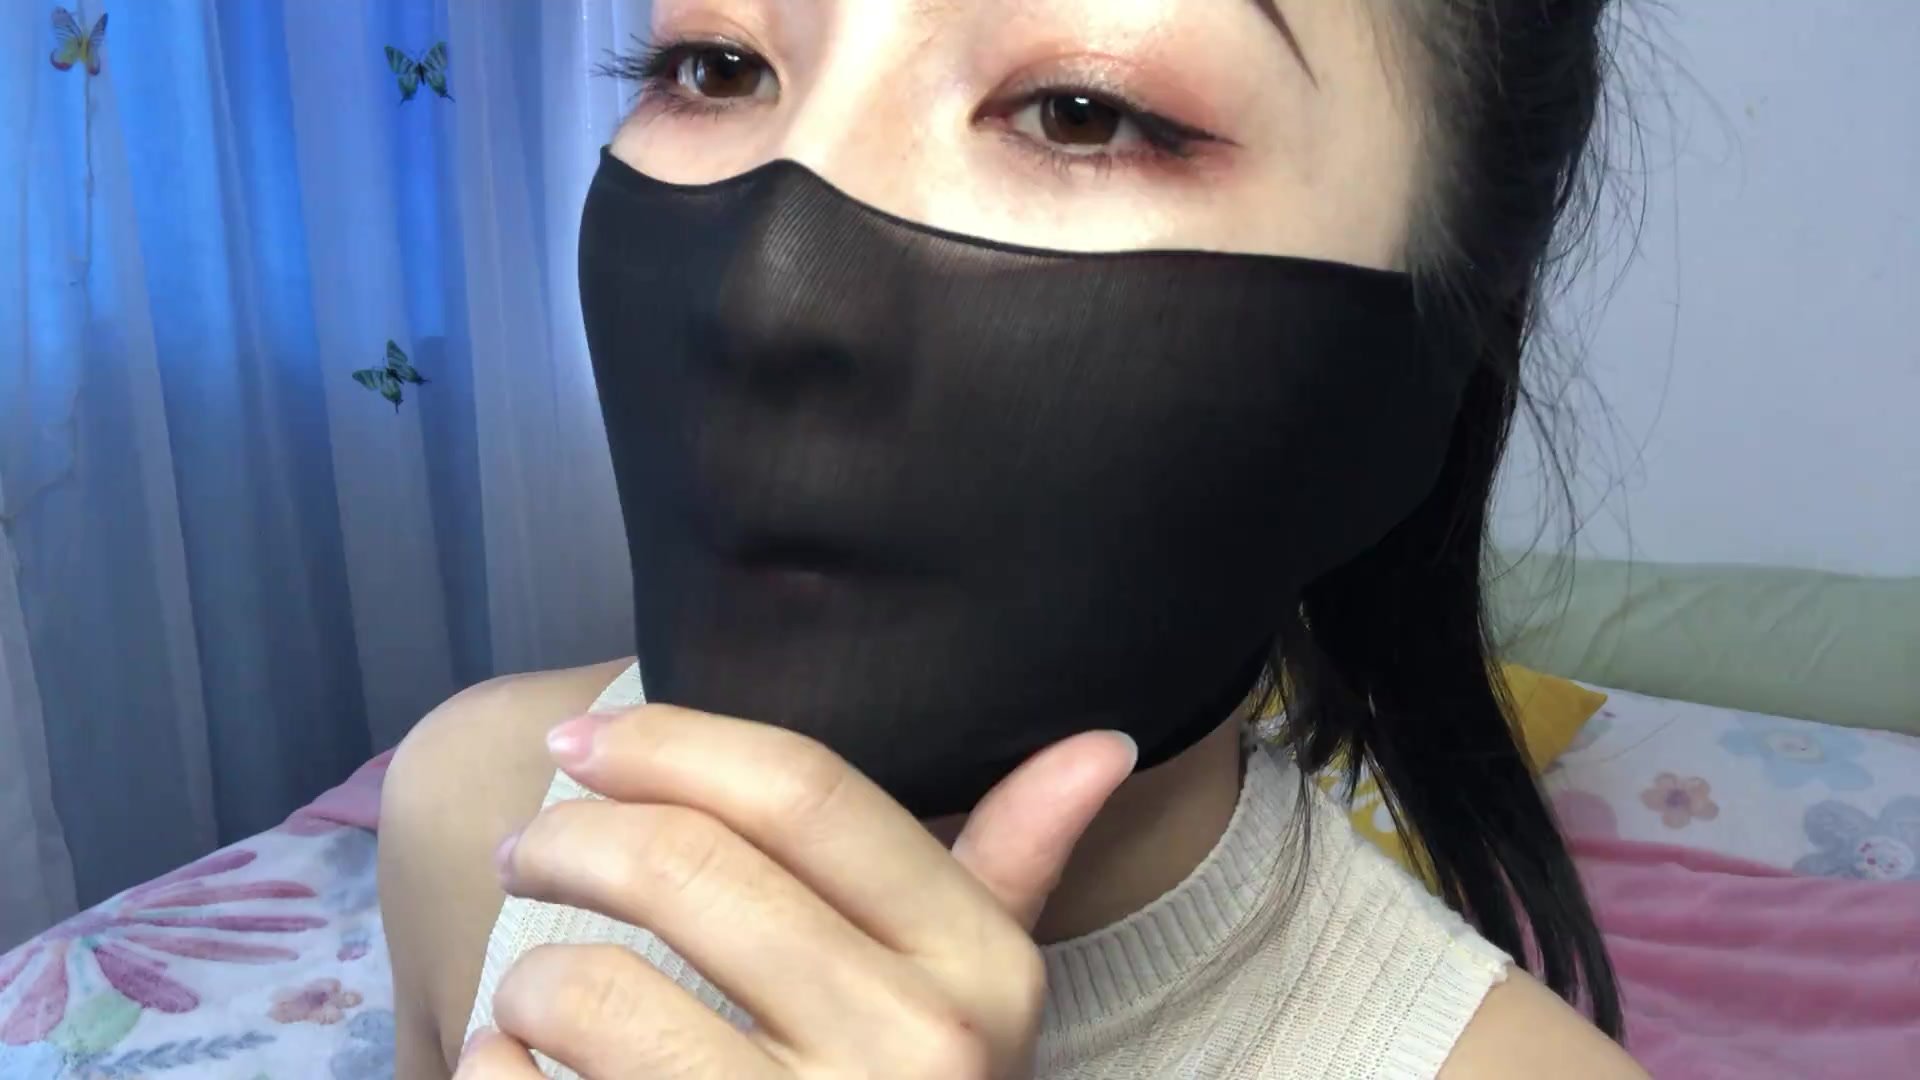 BoundHub - Chinese mask